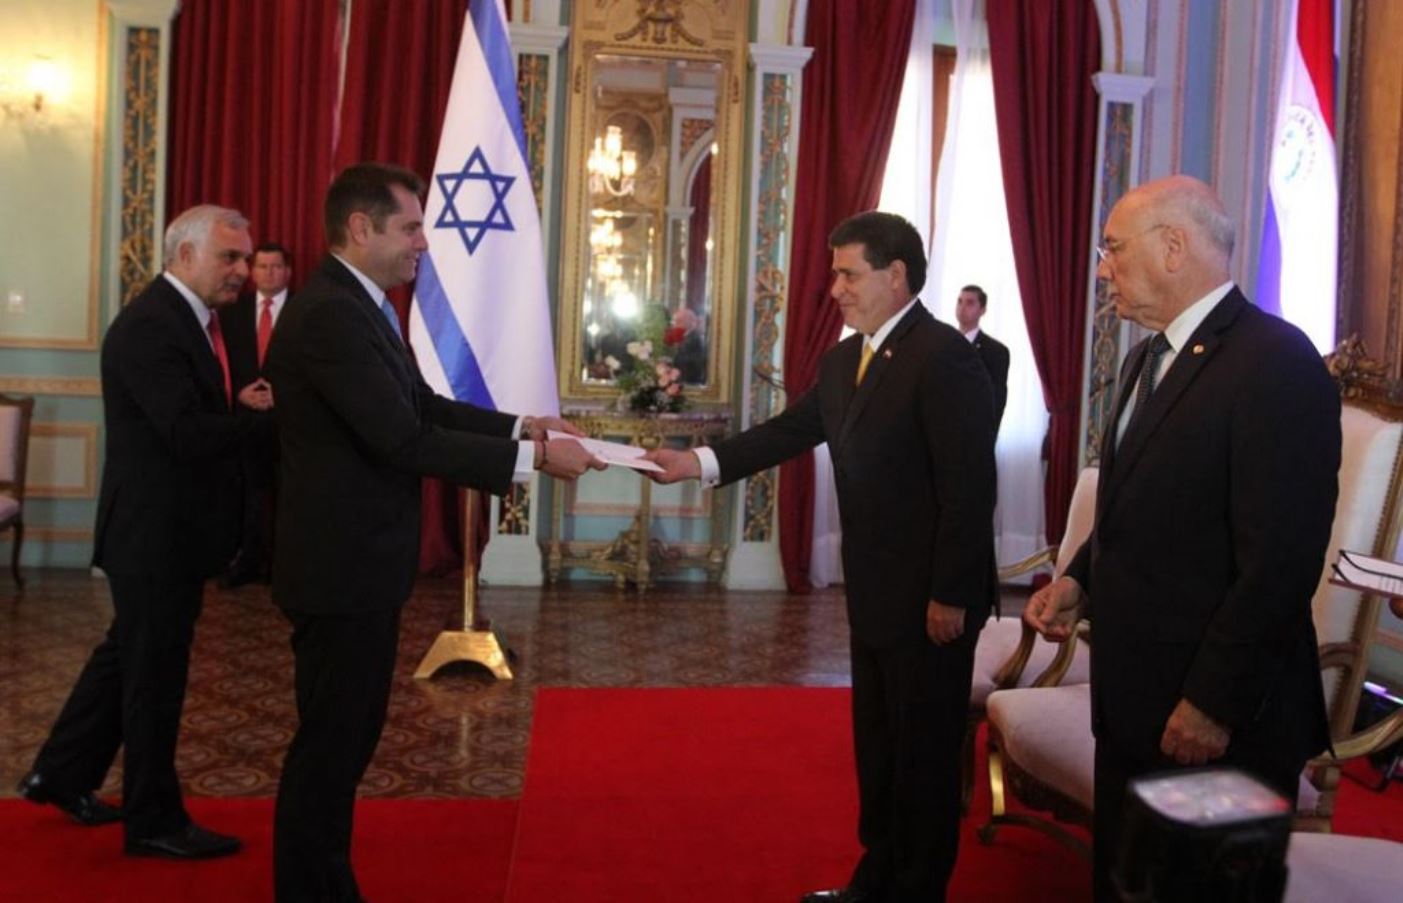 El embajador de Israel en Paraguay, Peleg Lewi, izq., presenta credenciales al presidente Horacio Cartes durante la reapertura de la embajada de ese país en julio del año pasado. Foto cortesía de la Dirección de Informática/SICOM de Paraguay